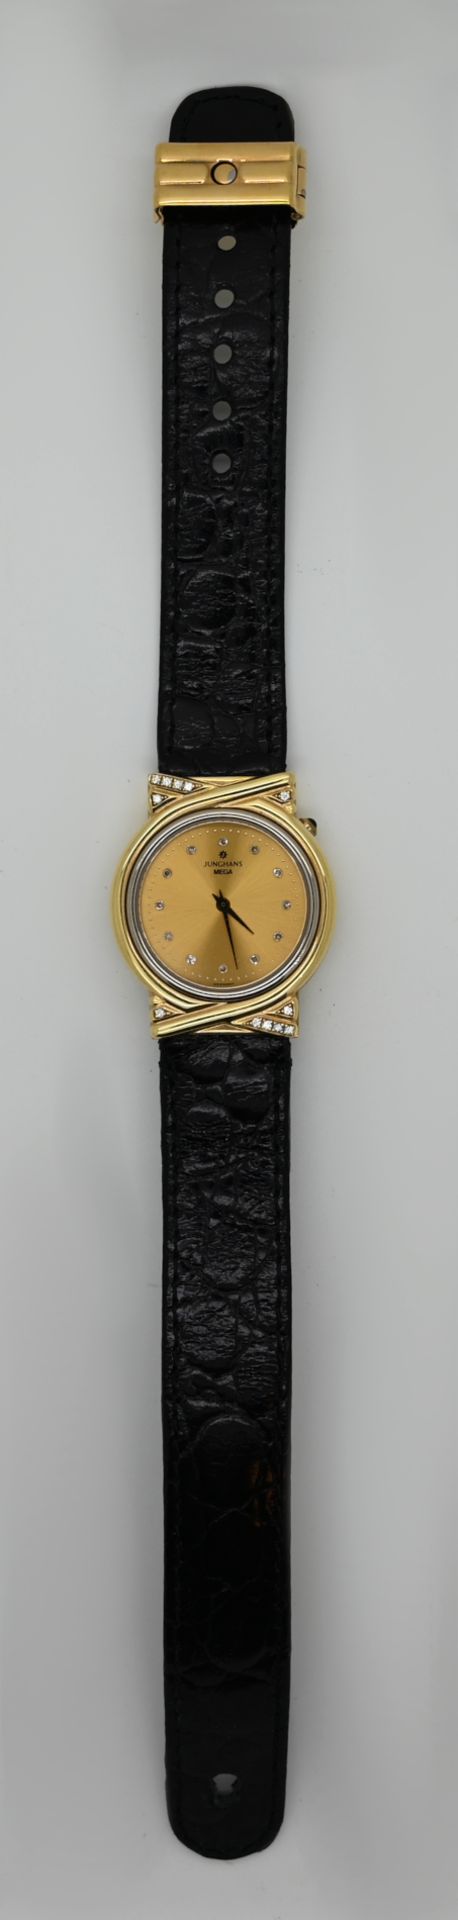 1 Armbanduhr JUNGHANS Mega, GG 14ct./Metall, mit Lederband und Brillanten (tw vvsi), mit Quittung, g - Bild 2 aus 3